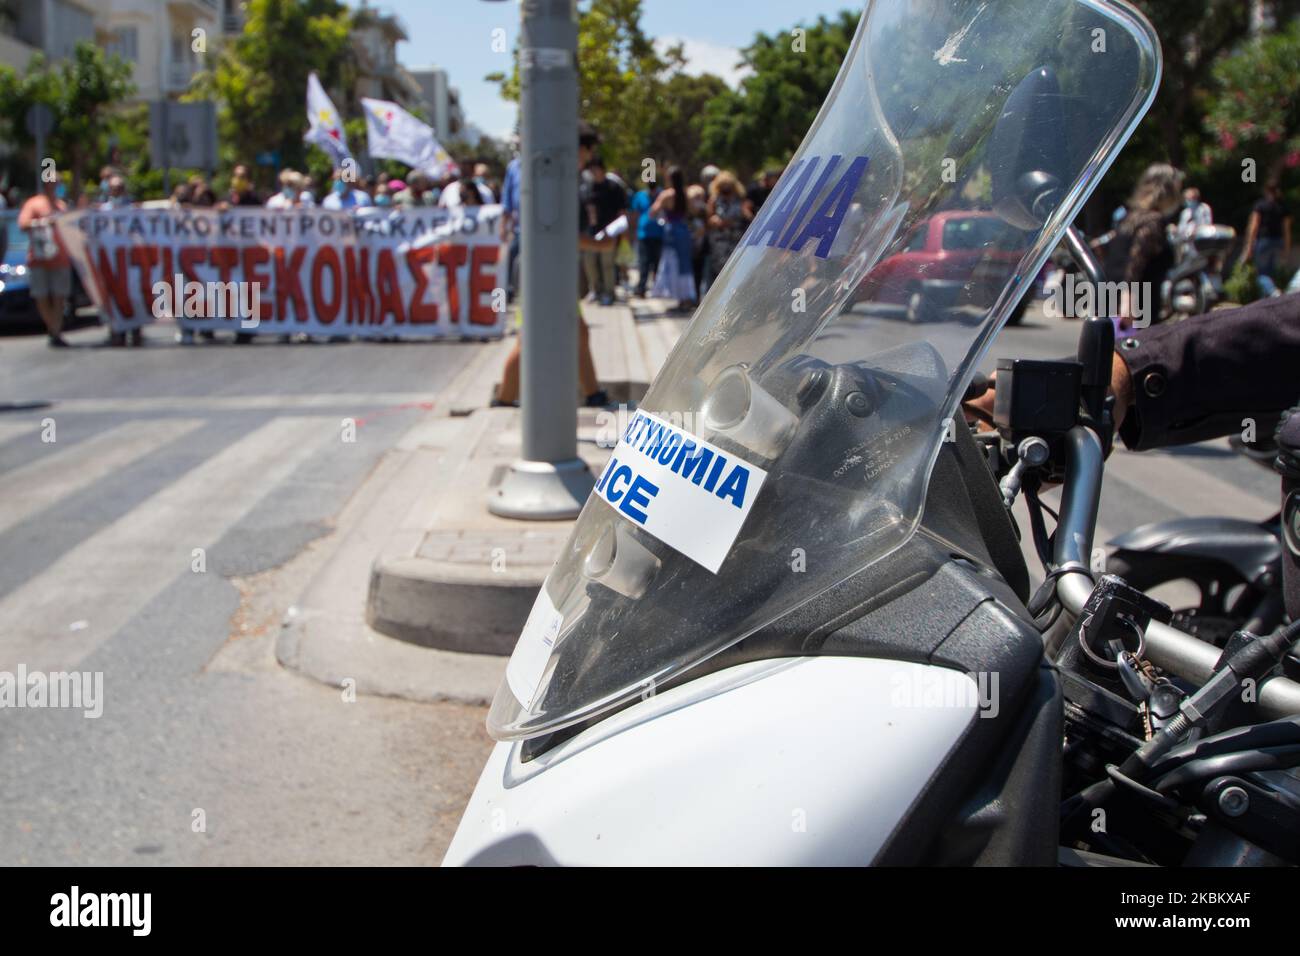 Des manifestants en grève générale en Grèce, contre les réformes du travail du gouvernement. Gros plan d'une moto de police. Des manifestants en arrière-plan défilent. Banque D'Images